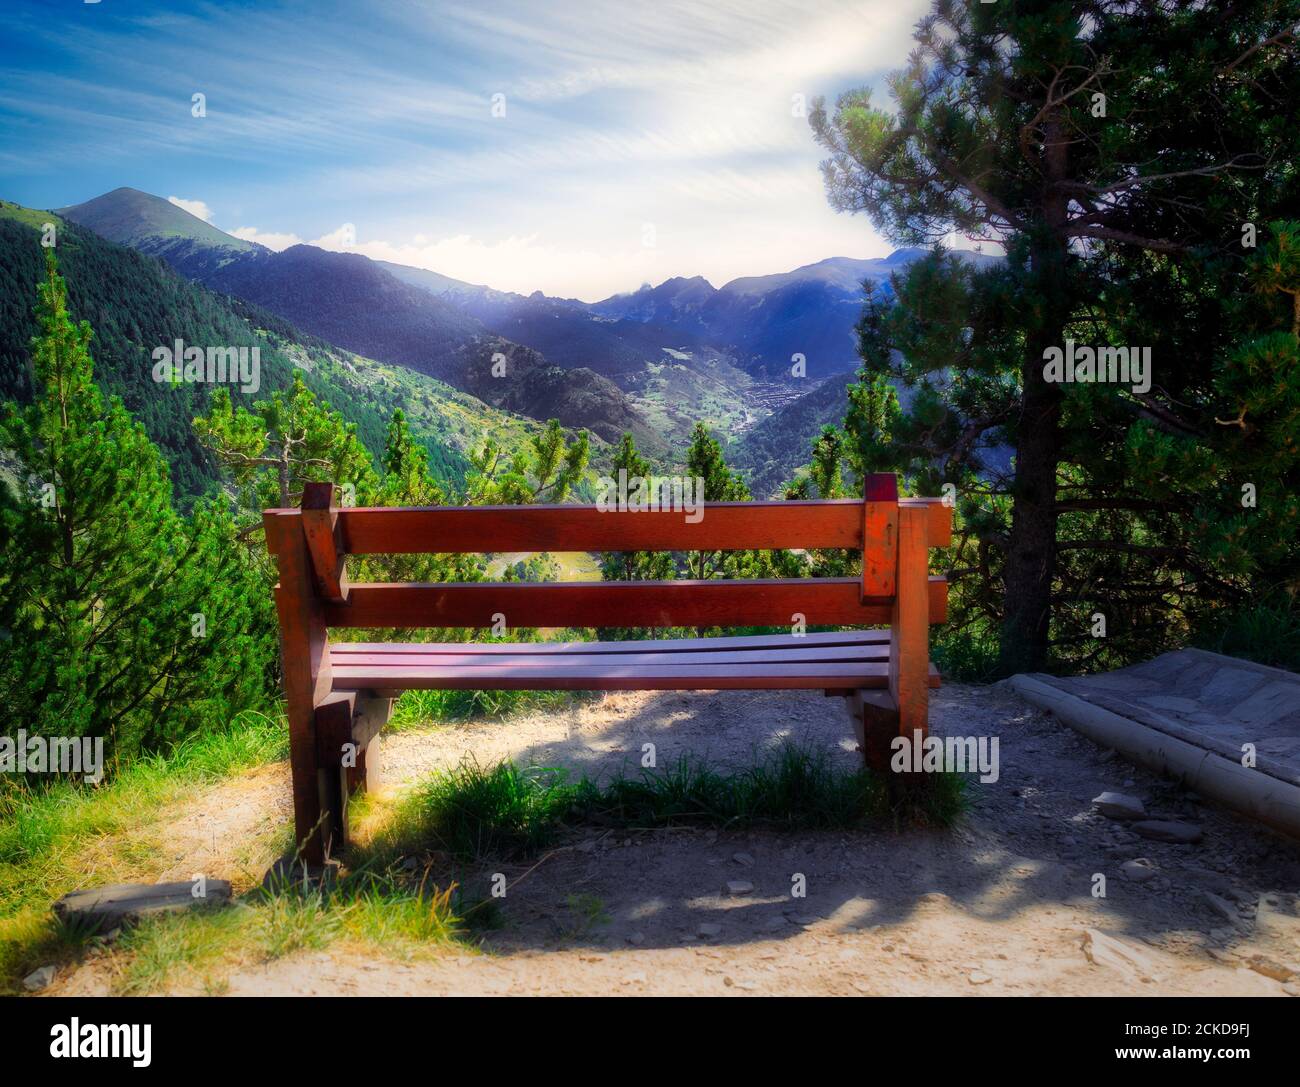 A bench at Roc del Quer at Andorra Stock Photo